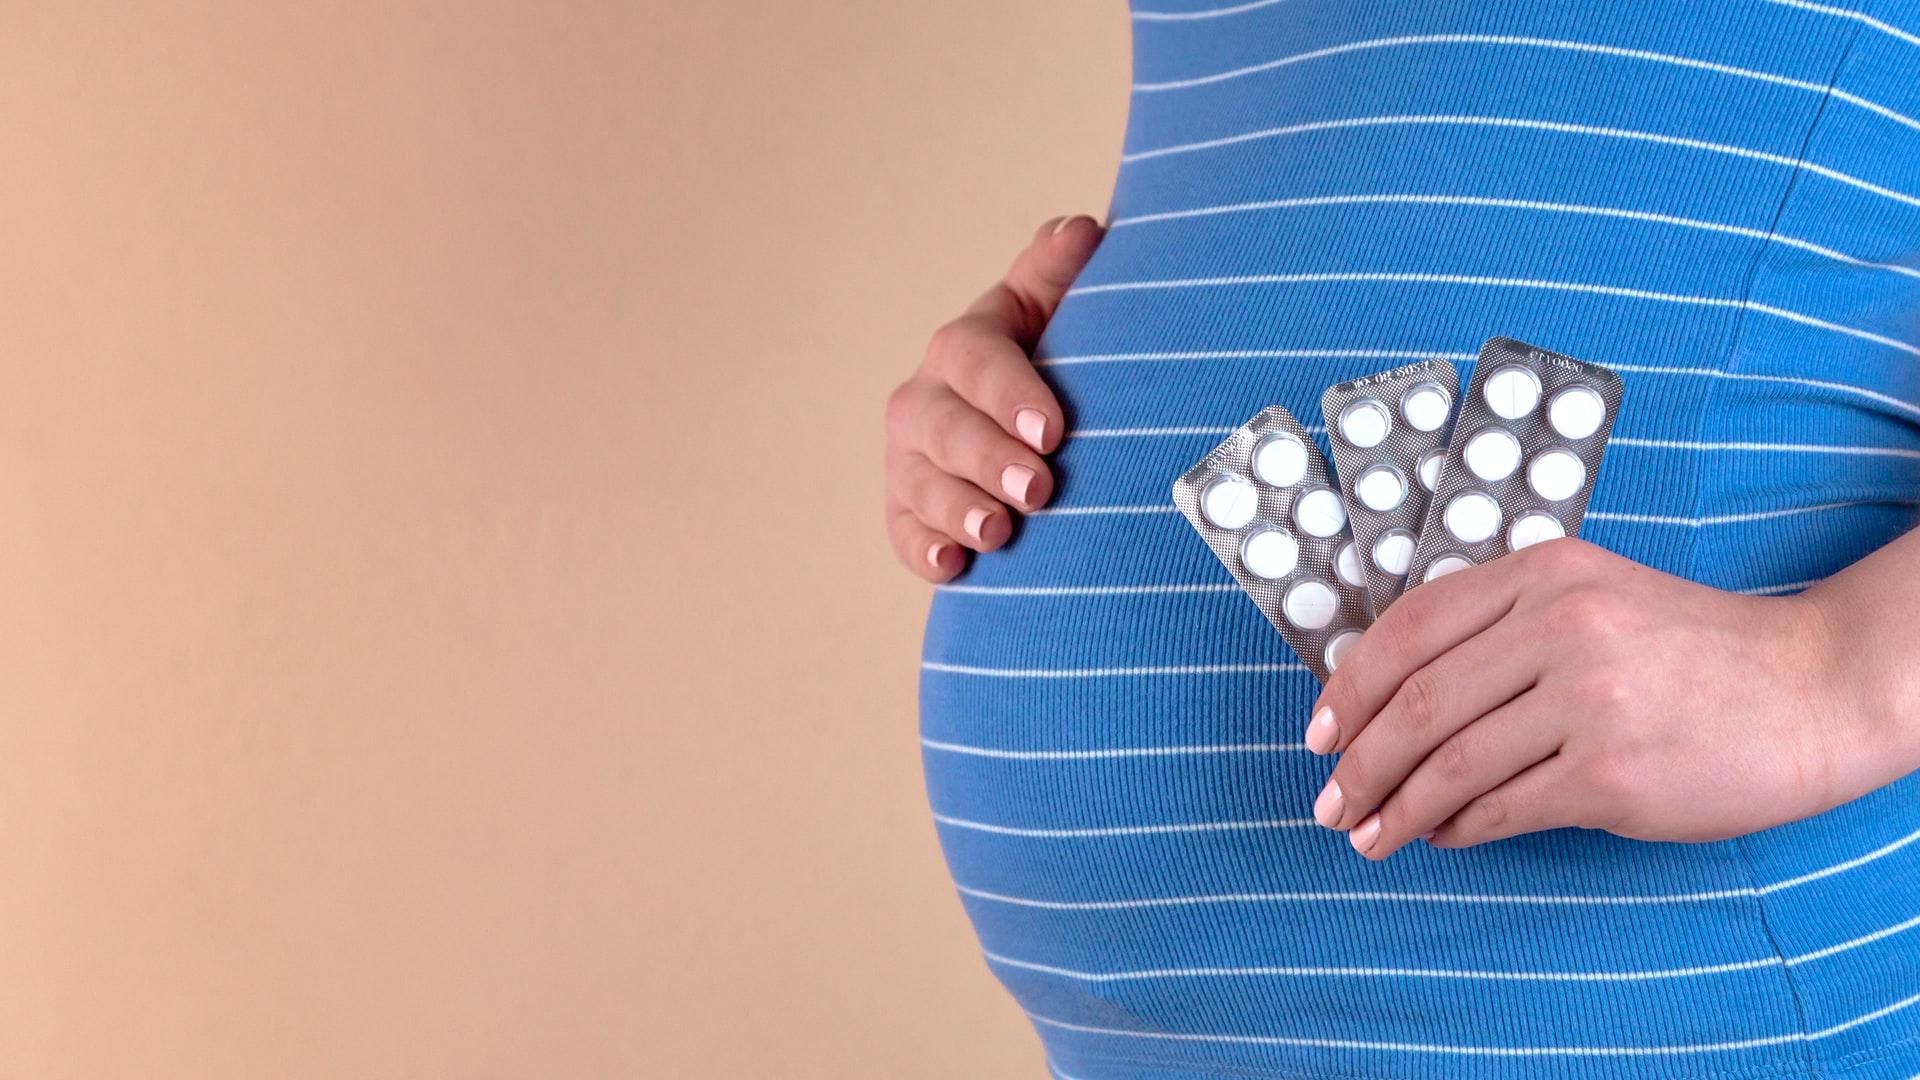 Низкий уровень йода во время беременности опасен для интеллектуального развития плода